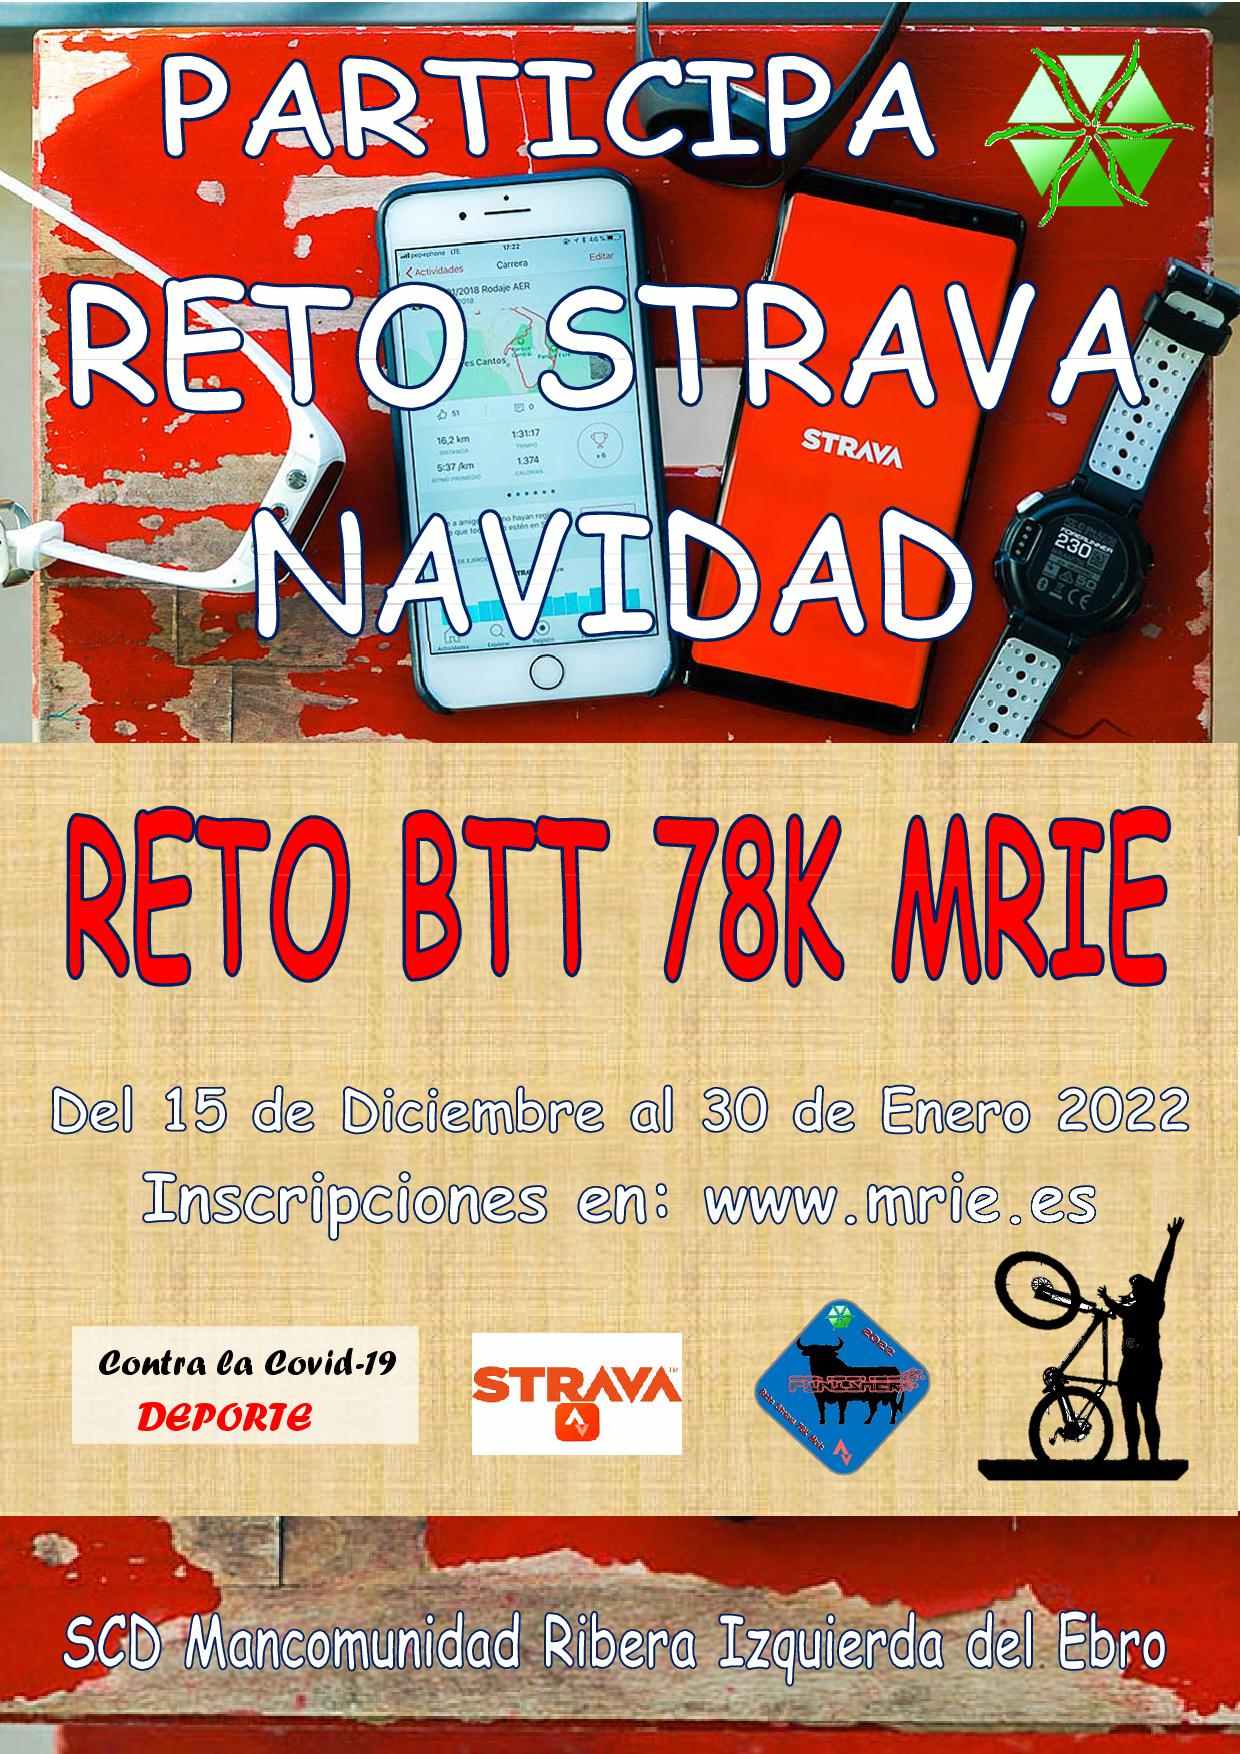 RETO BTT 78K MRIE - Register